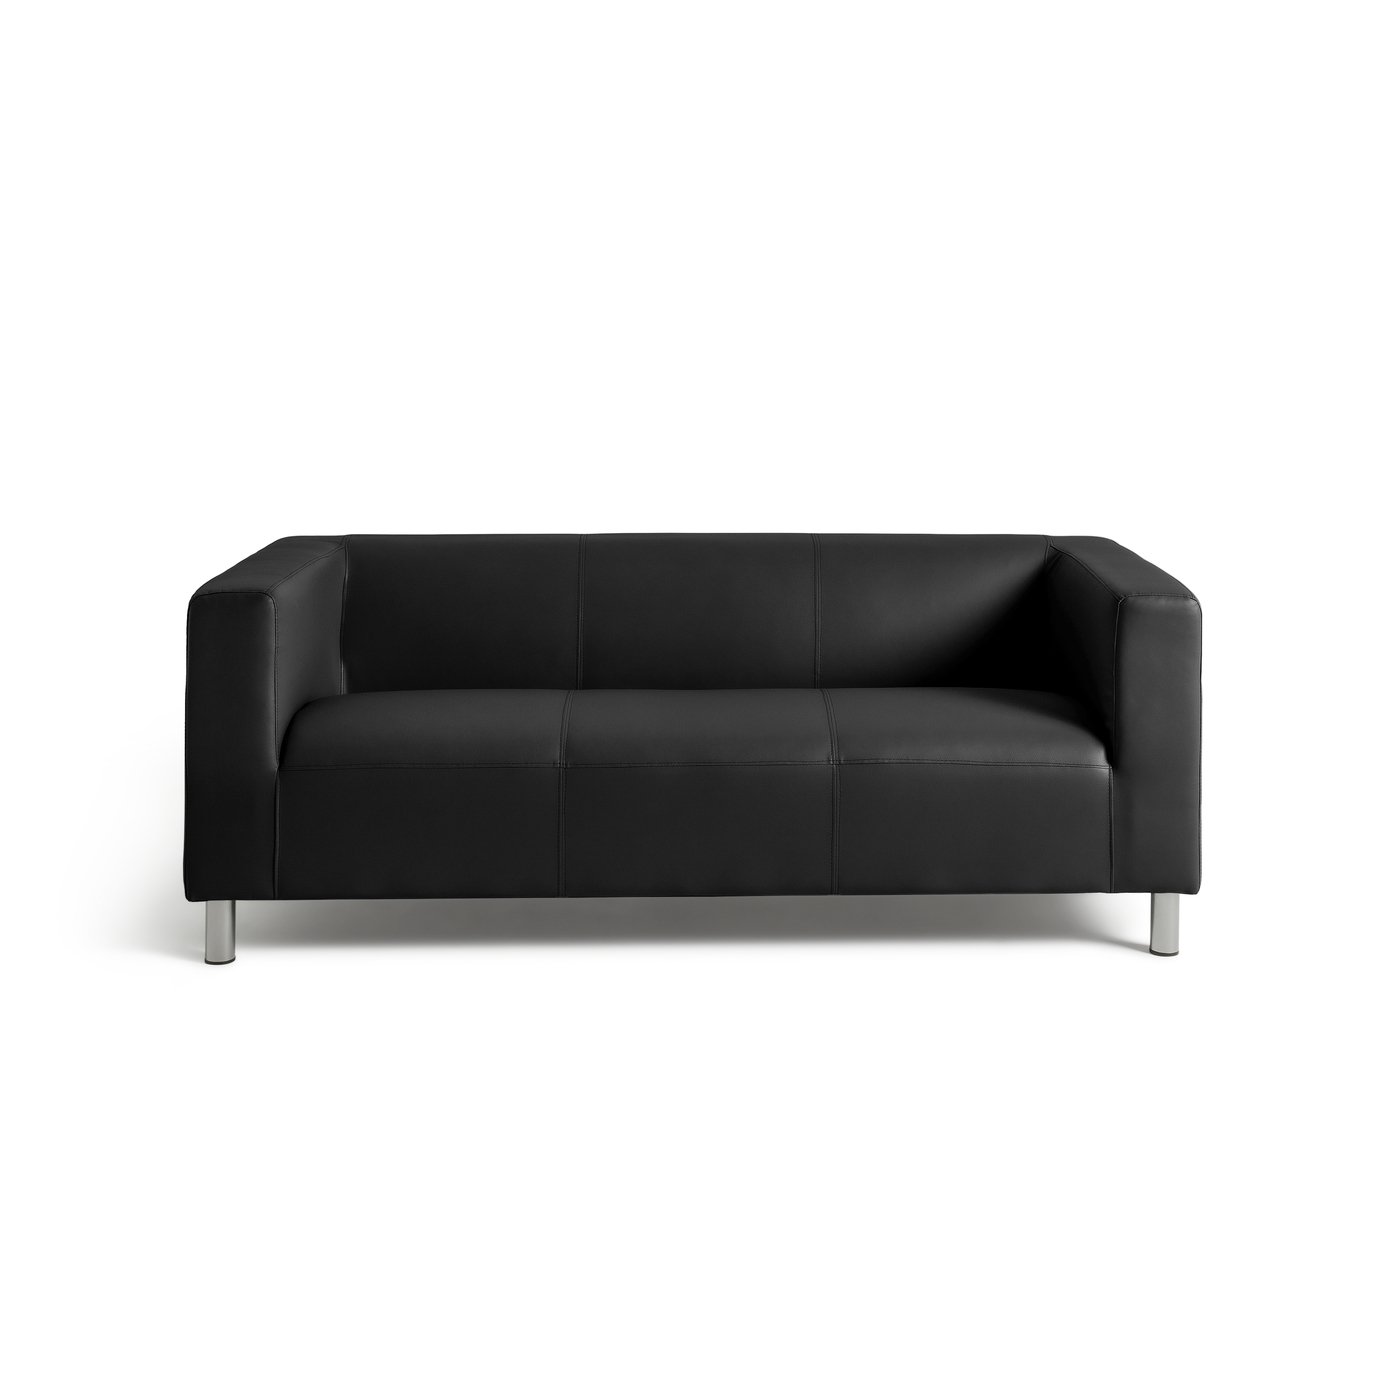 Moda 3 Seater Faux Leather Sofa - Black 